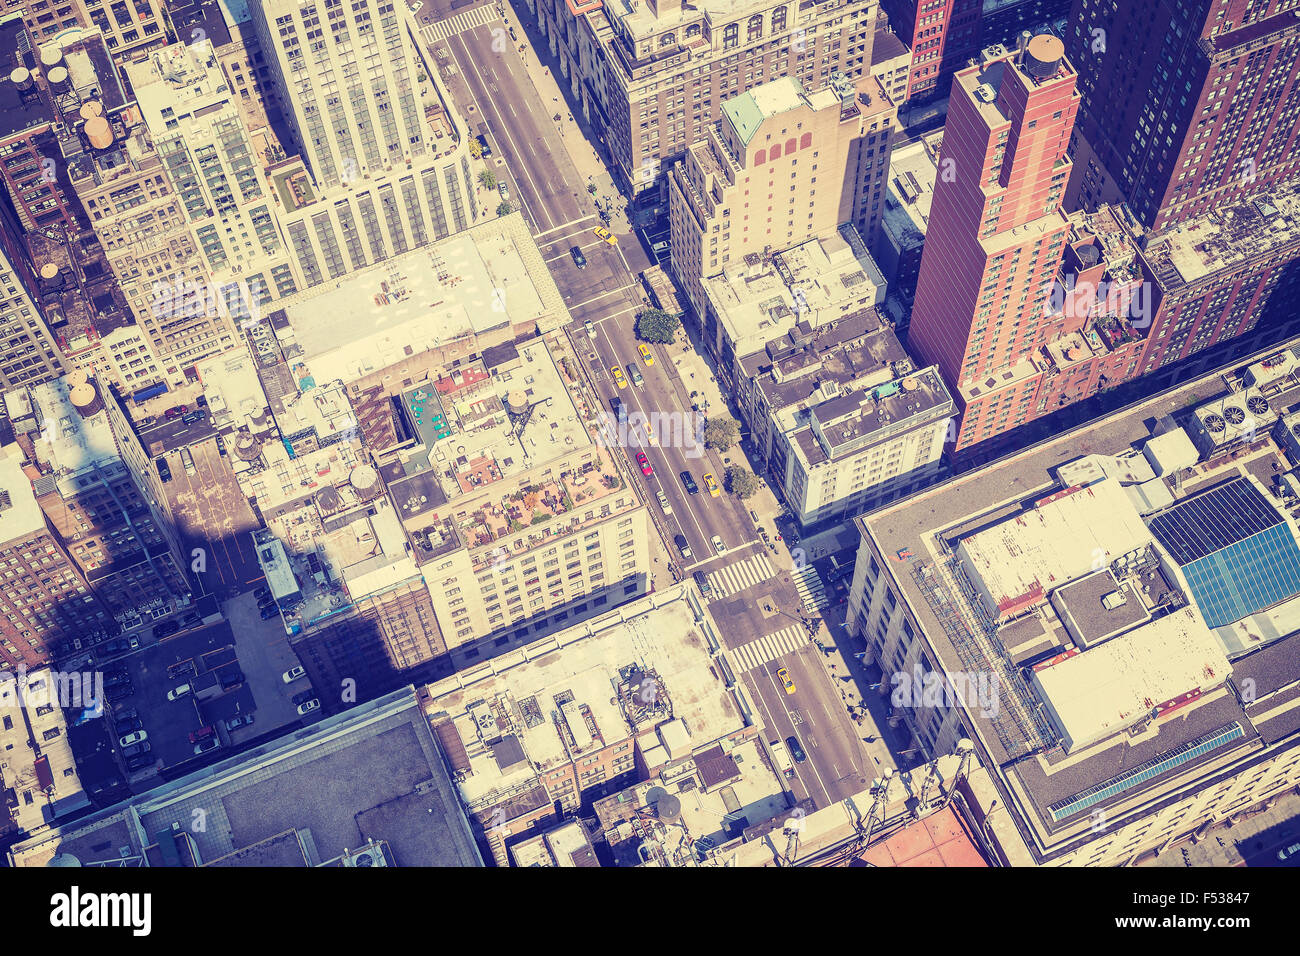 In stile vintage fotografia aerea di Manhattan street con ombra dell'Empire State Building, New York, Stati Uniti d'America. Foto Stock